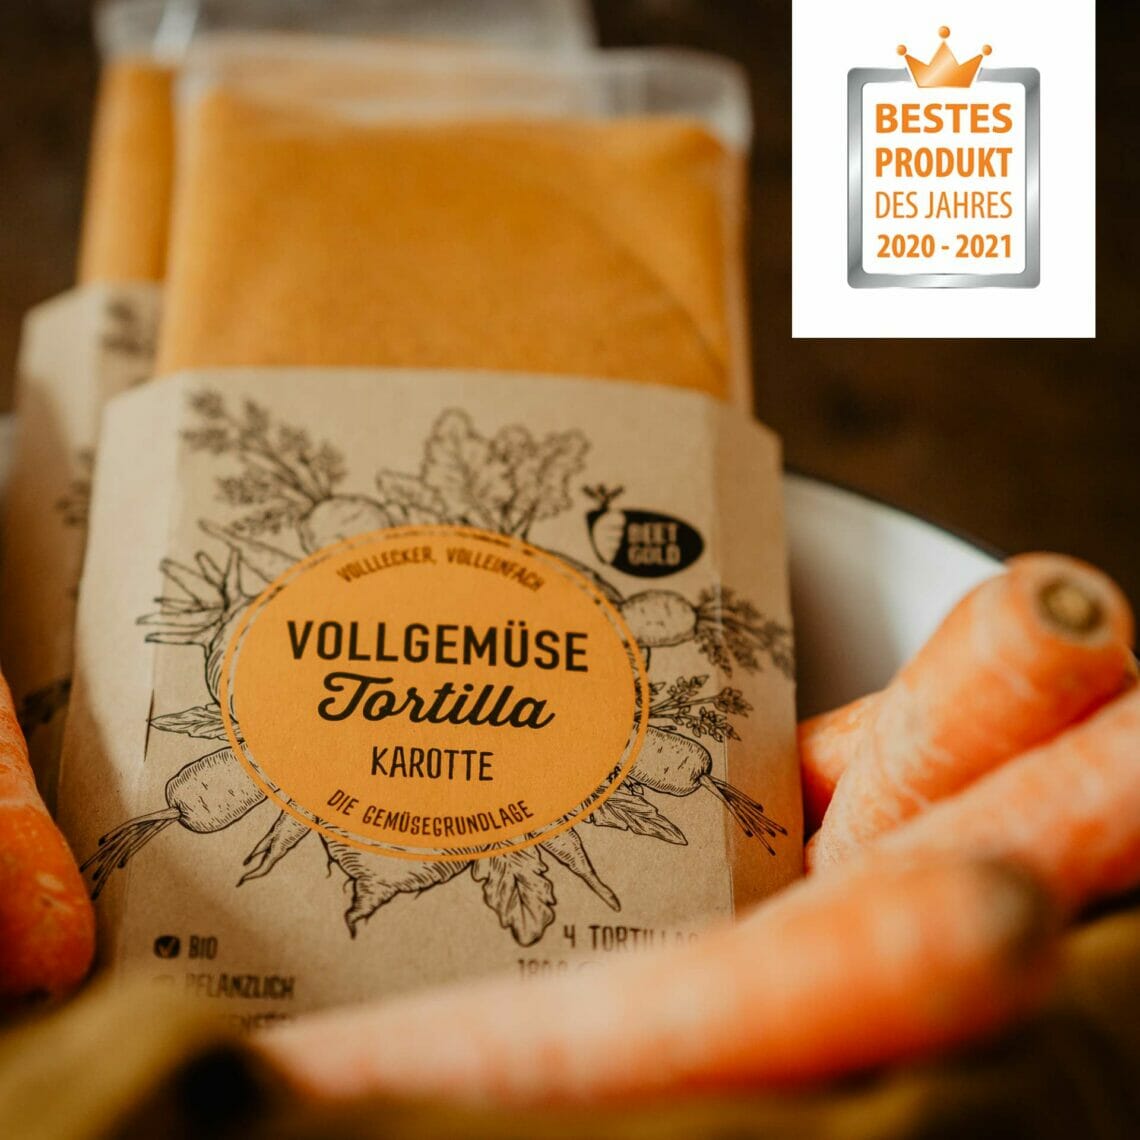 Karotten Tortilla in Schale mit Karotten und Bestes Produkt 2020 2021 Auszeichnungen